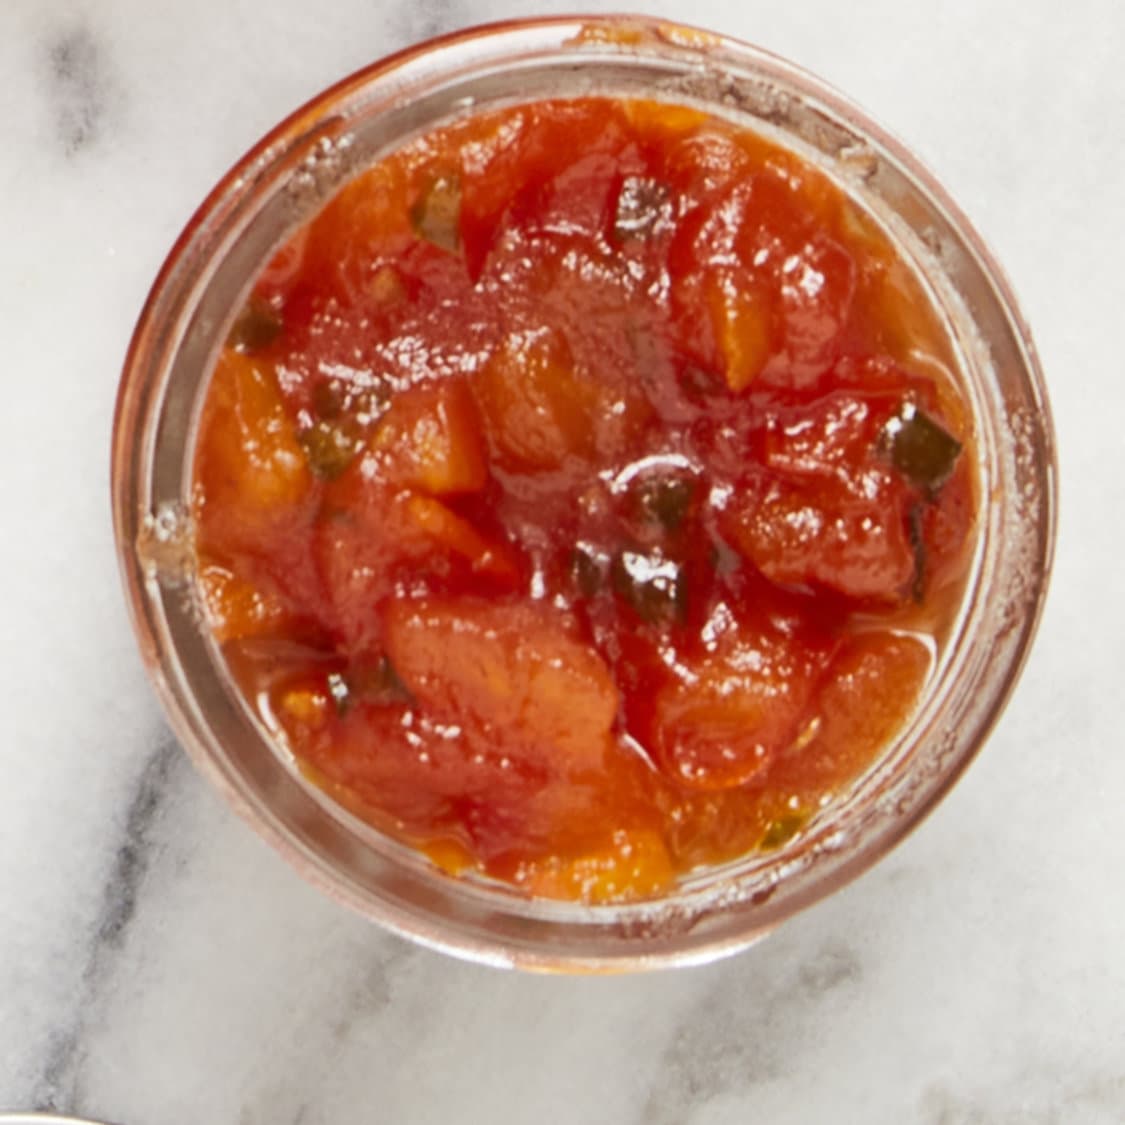 https://fleishigs.com/images/mobile-app/recipes/92-list-tomato-marmalade.jpg